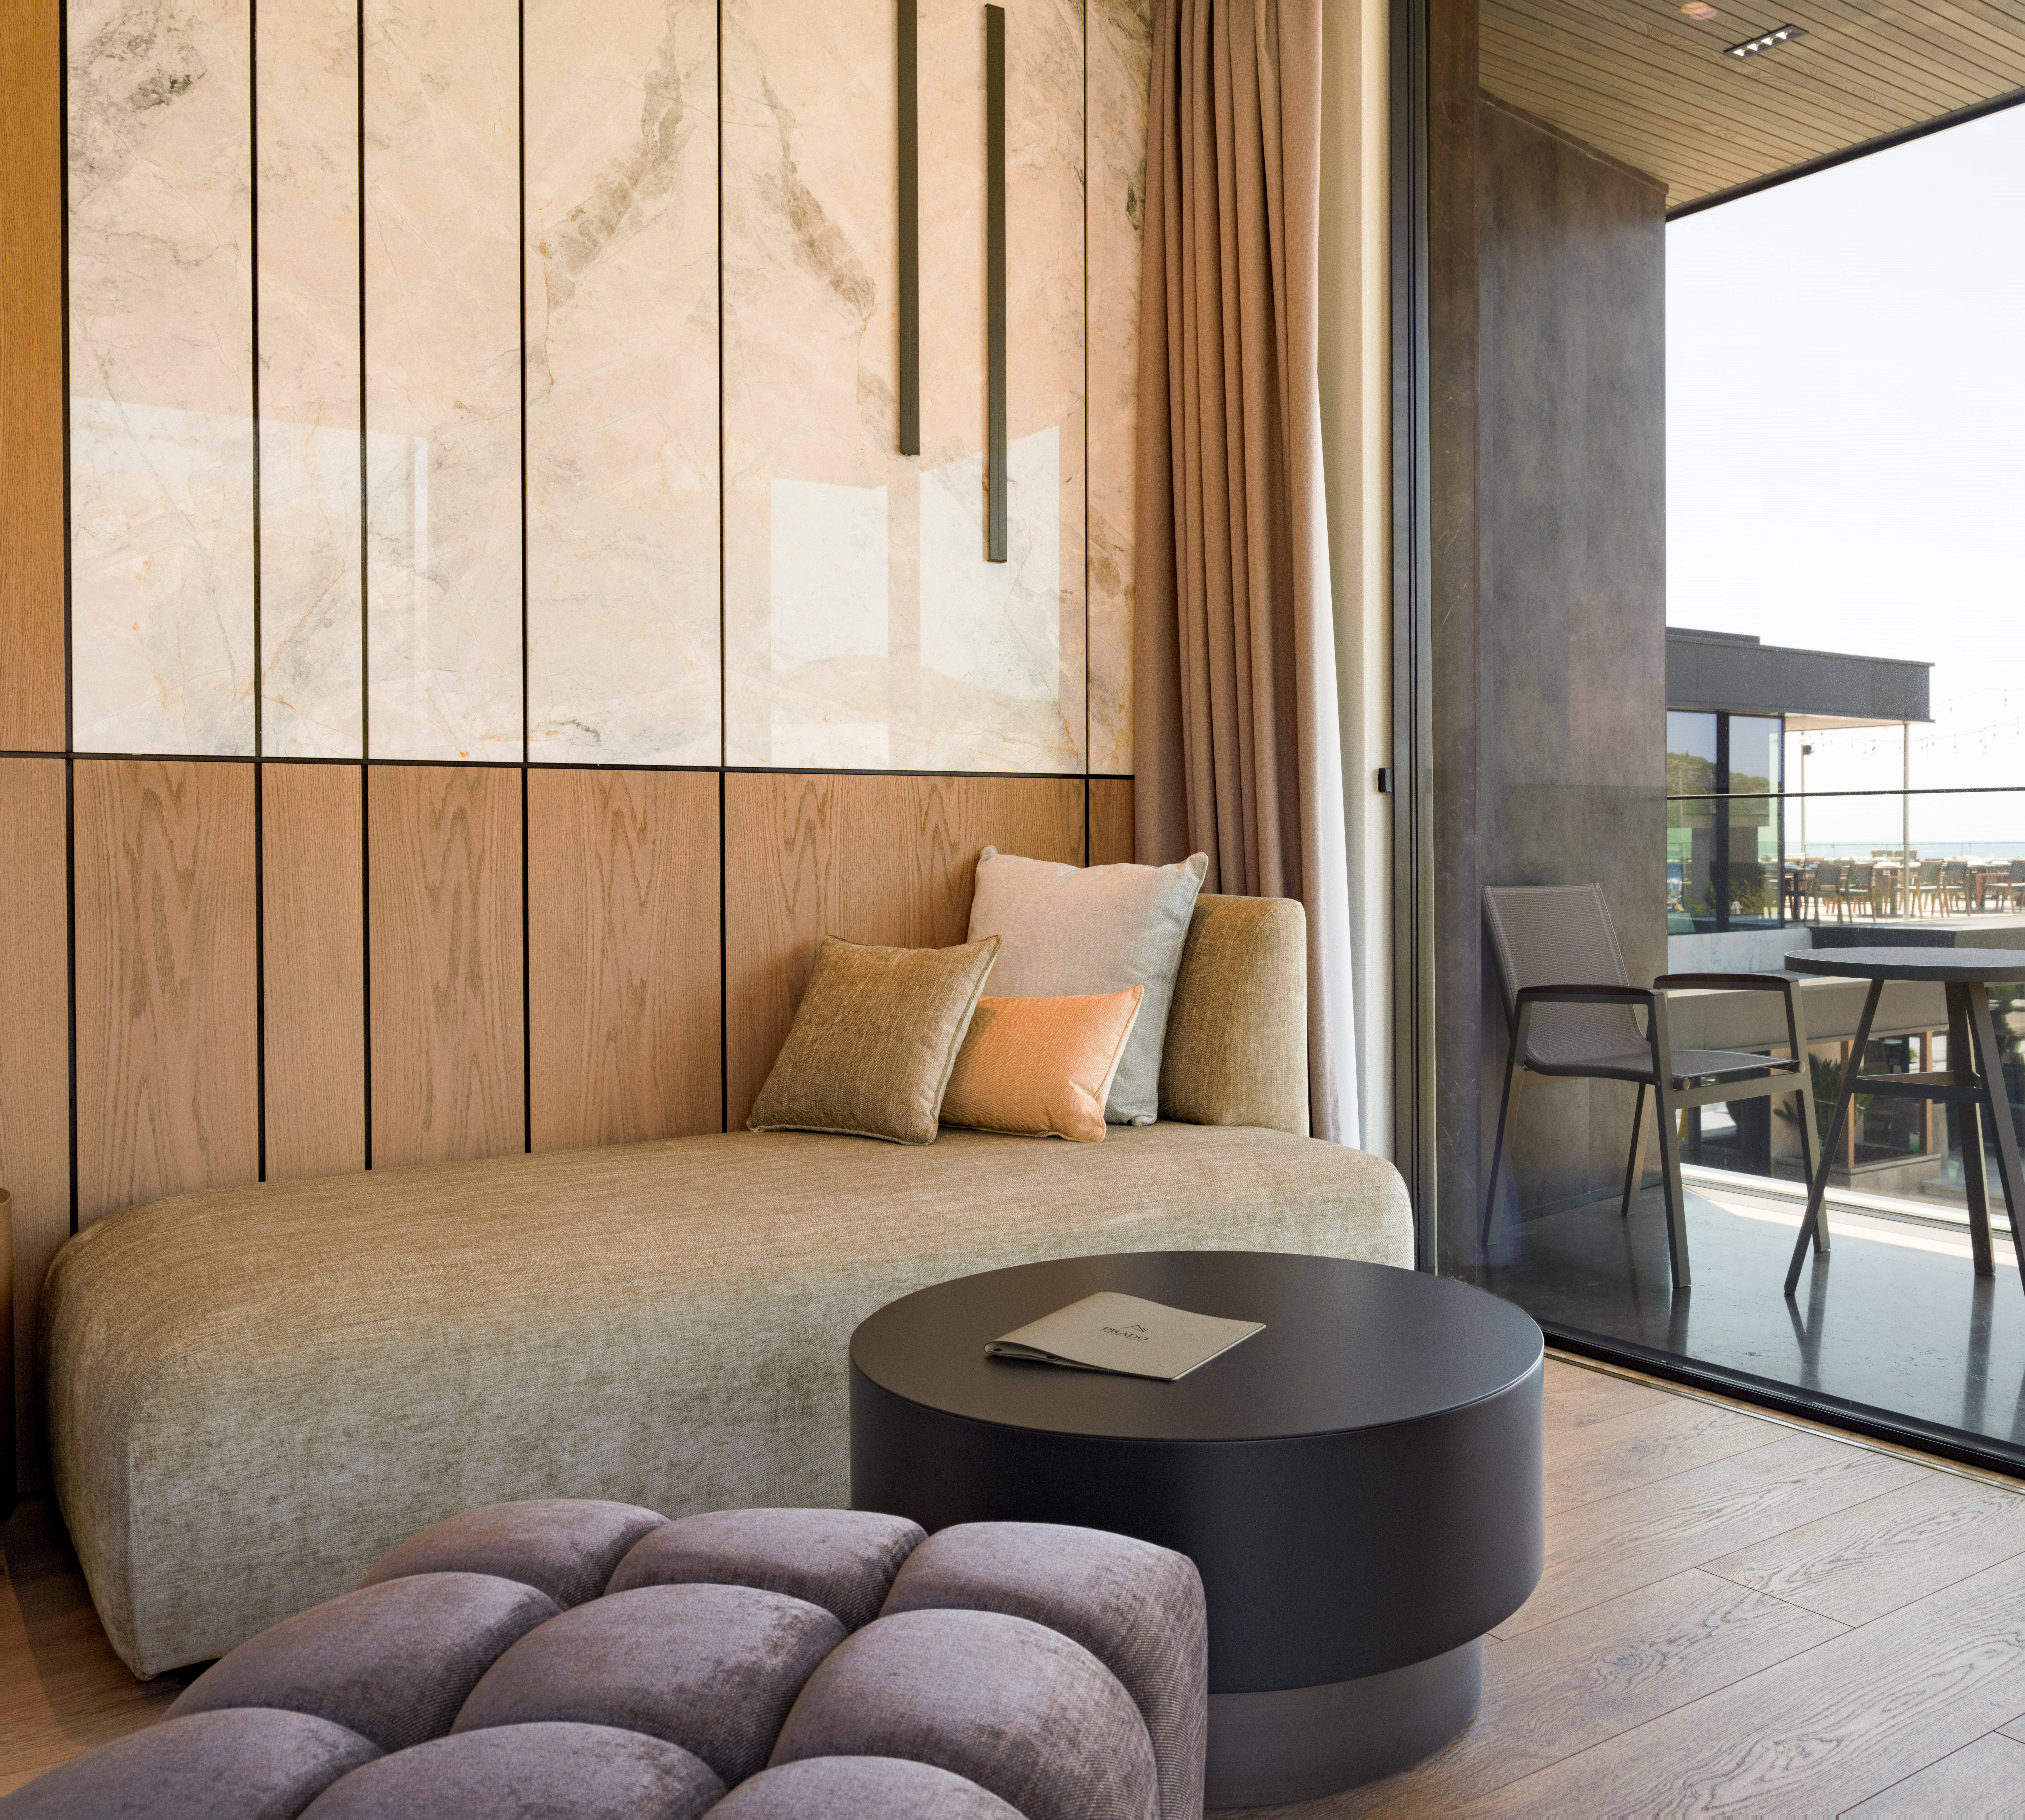 prado_luxury_hotel_room_junior_suite_seaview_jacuzzi_living_area